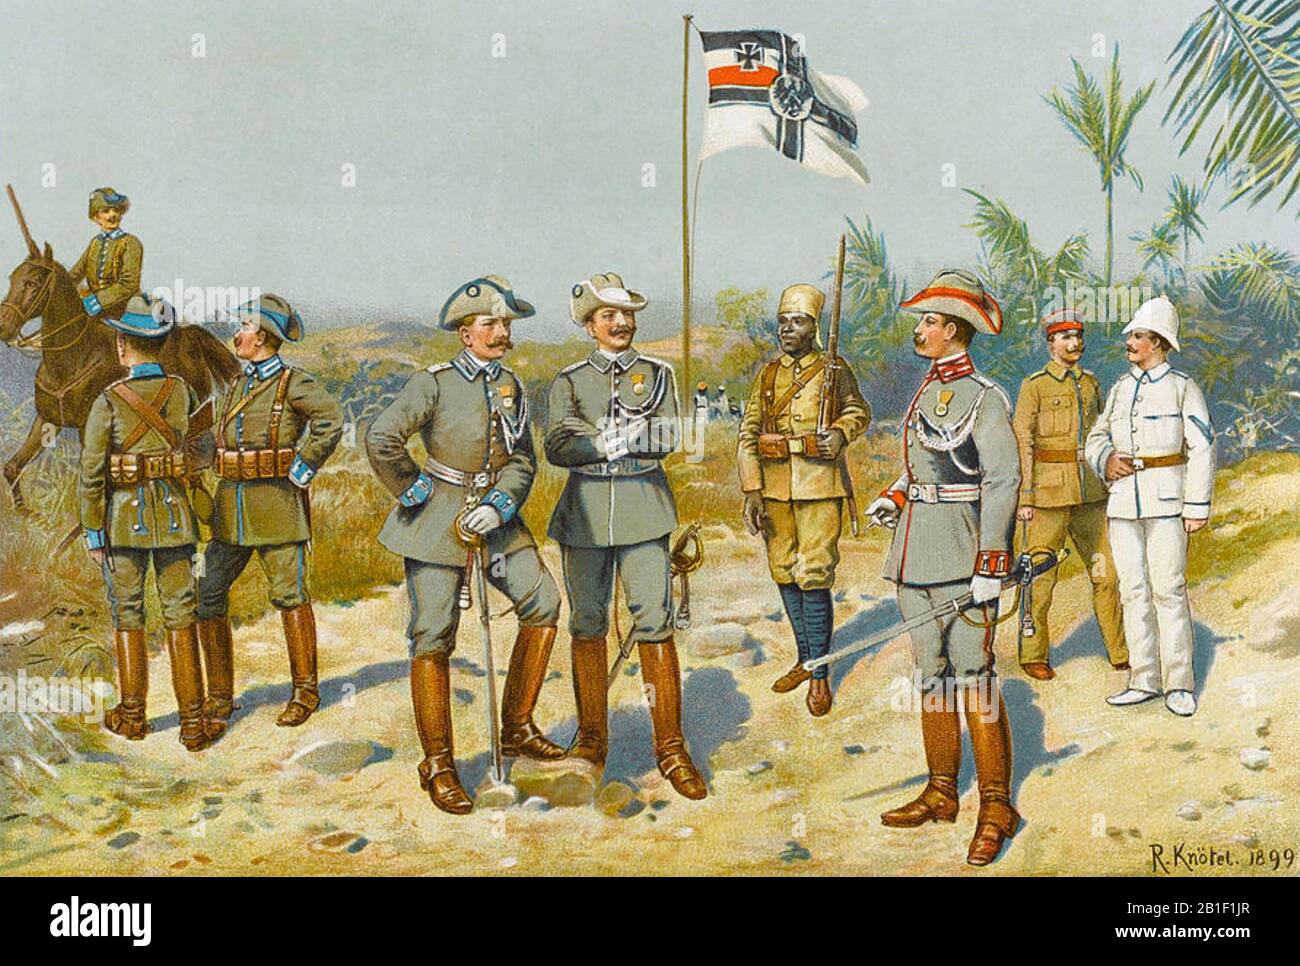 COLONIALISMO tedesco - Officers provenienti da diverse aree dell'Africa meridionale controllata dalla Germania in una stampa del 1899. Foto Stock